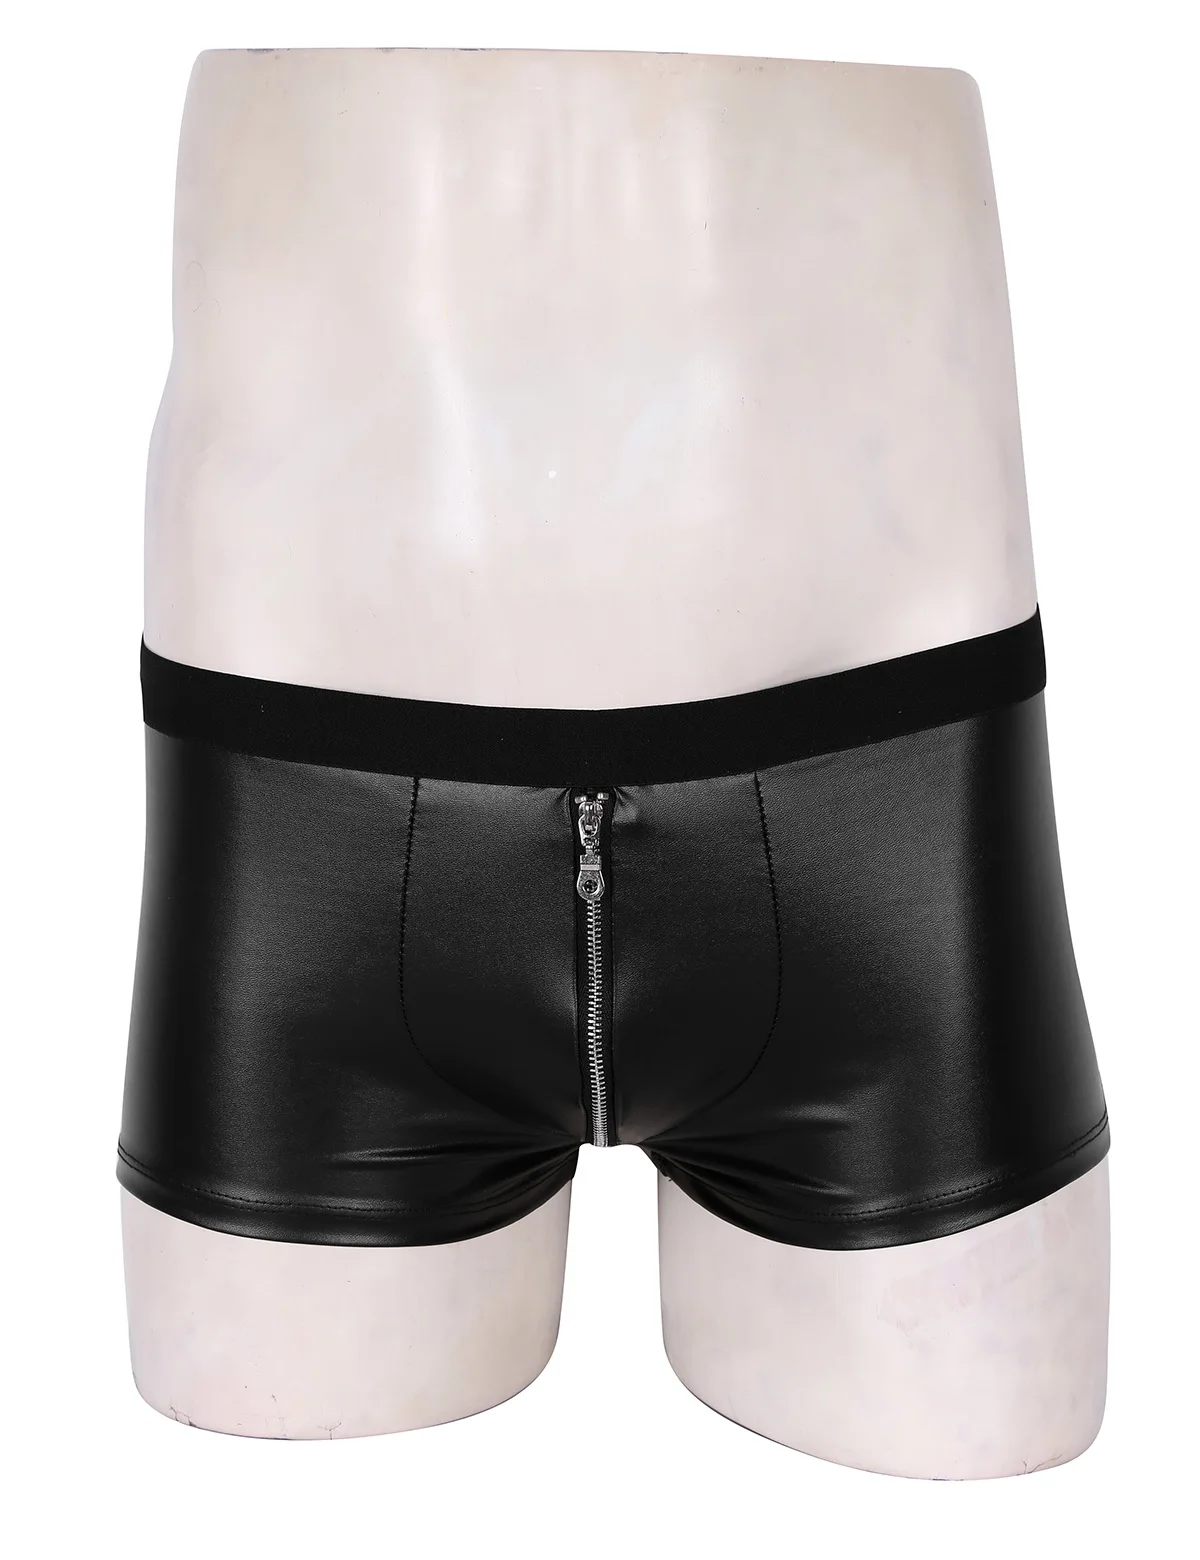 DPOIS мужские трусы латексные шорты костюм для взрослых спортивный костюм мужской Wetlook черные кожаные трусы-боксеры Карнавальная Клубная одежда